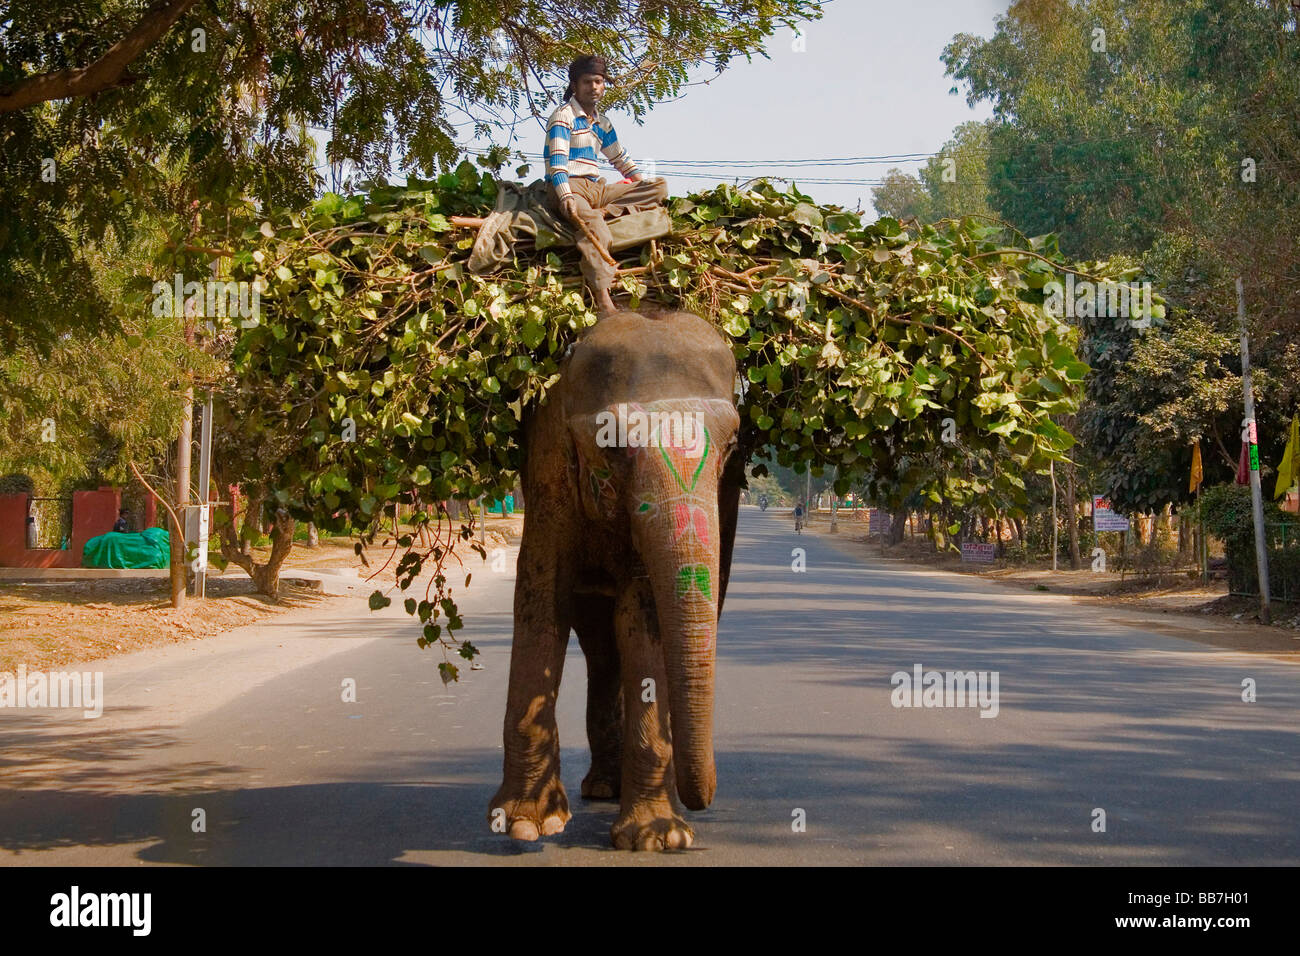 L'éléphant indien le transport des aliments pour animaux, de l'Inde du Nord, Inde, Asie Banque D'Images